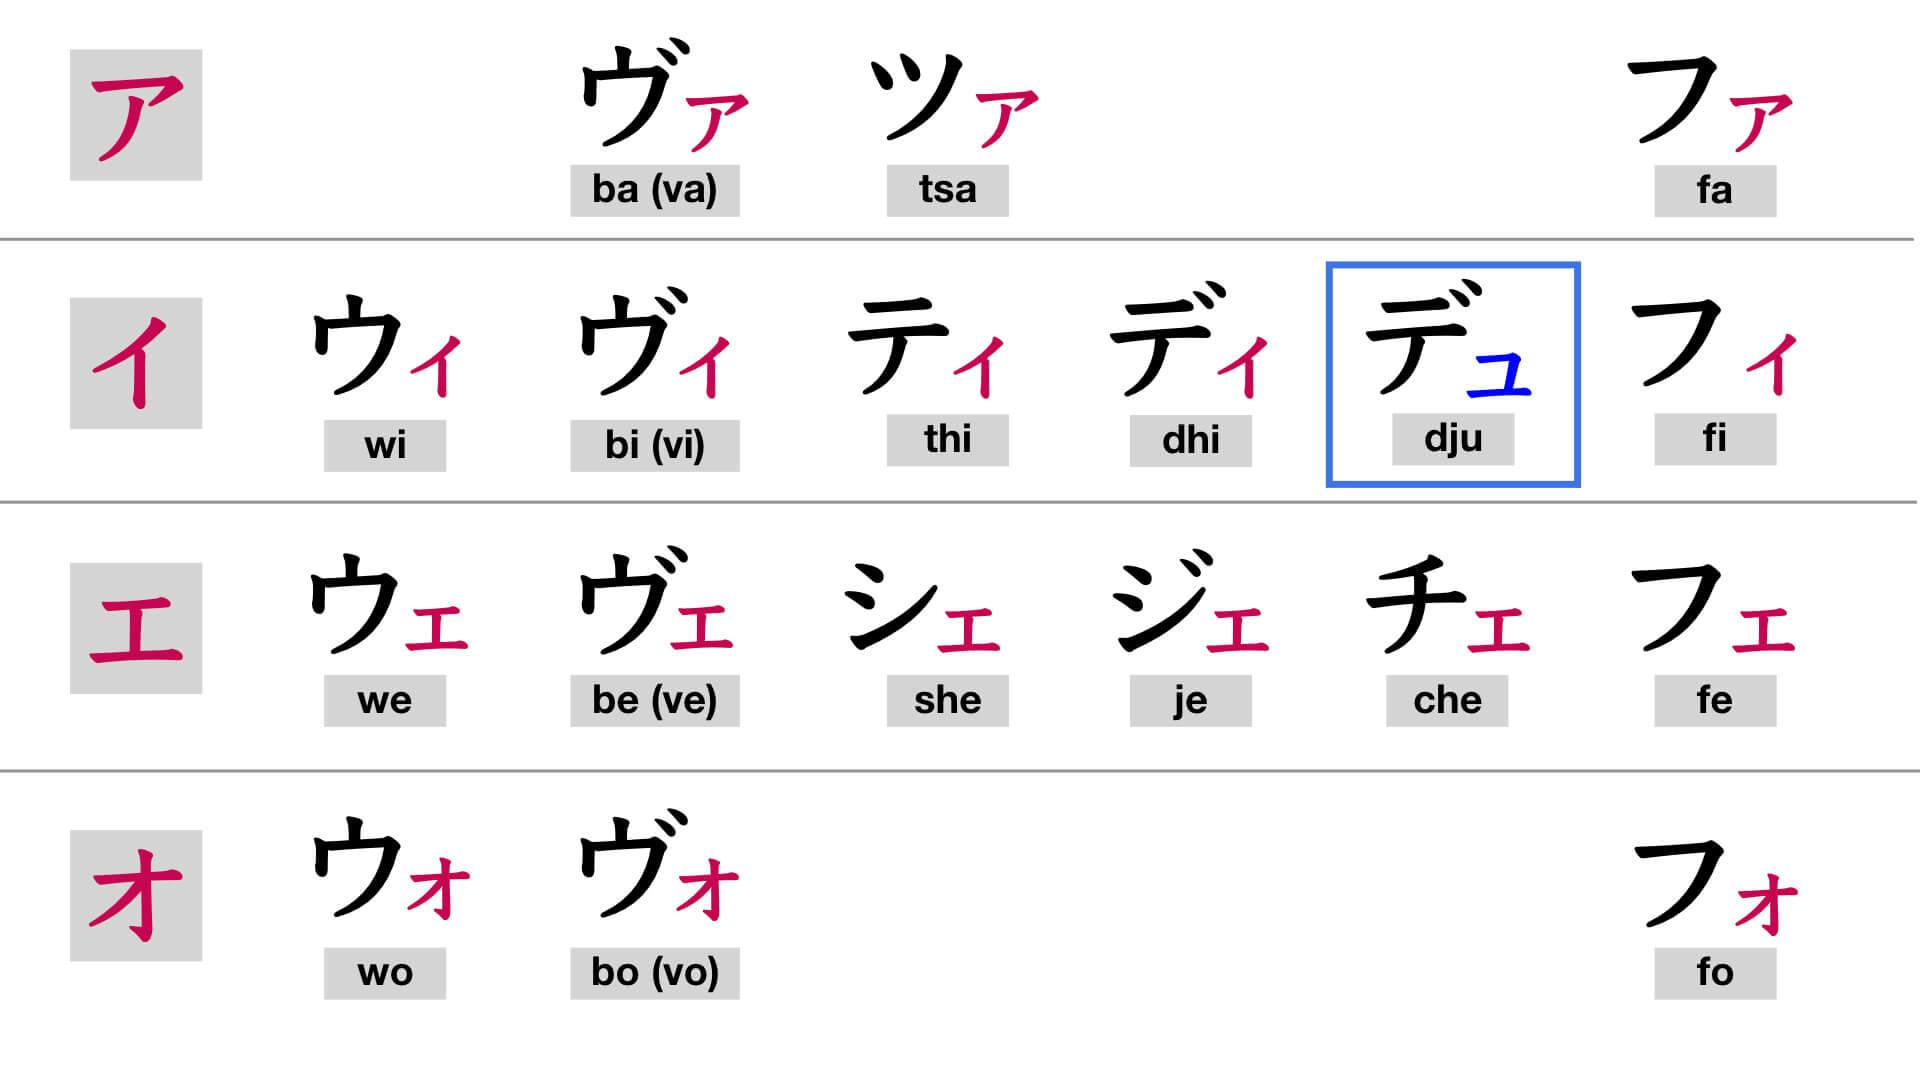 Katakana chart